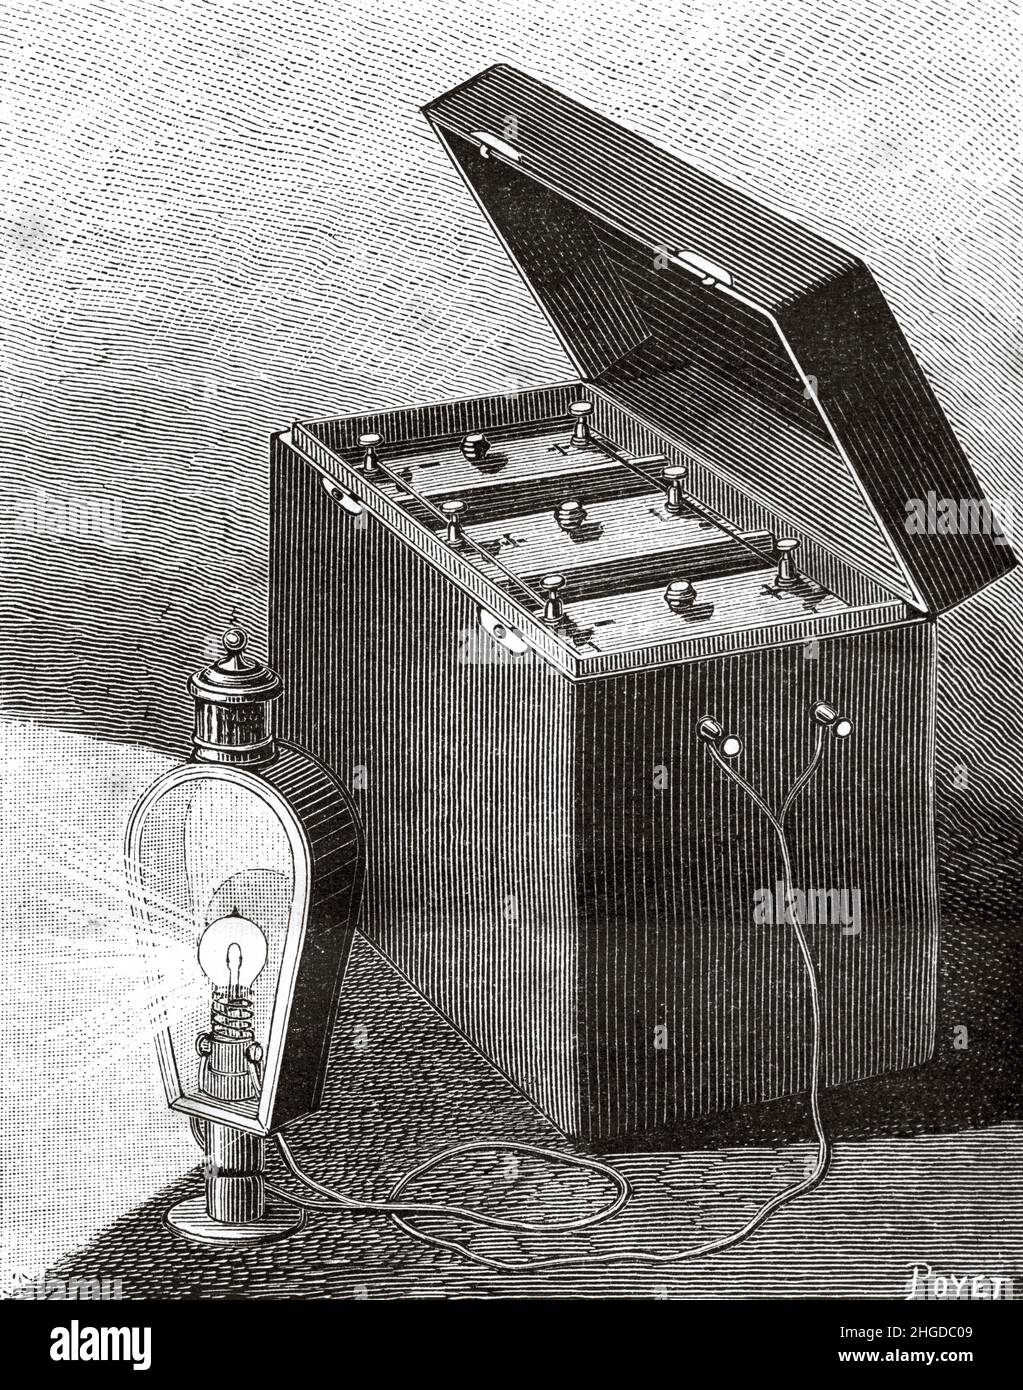 Lanterne de voiture électrique avec compartiment à piles, qui peut être placée sous le siège du conducteur.Ancienne illustration gravée du 19th siècle de la nature 1884 Banque D'Images